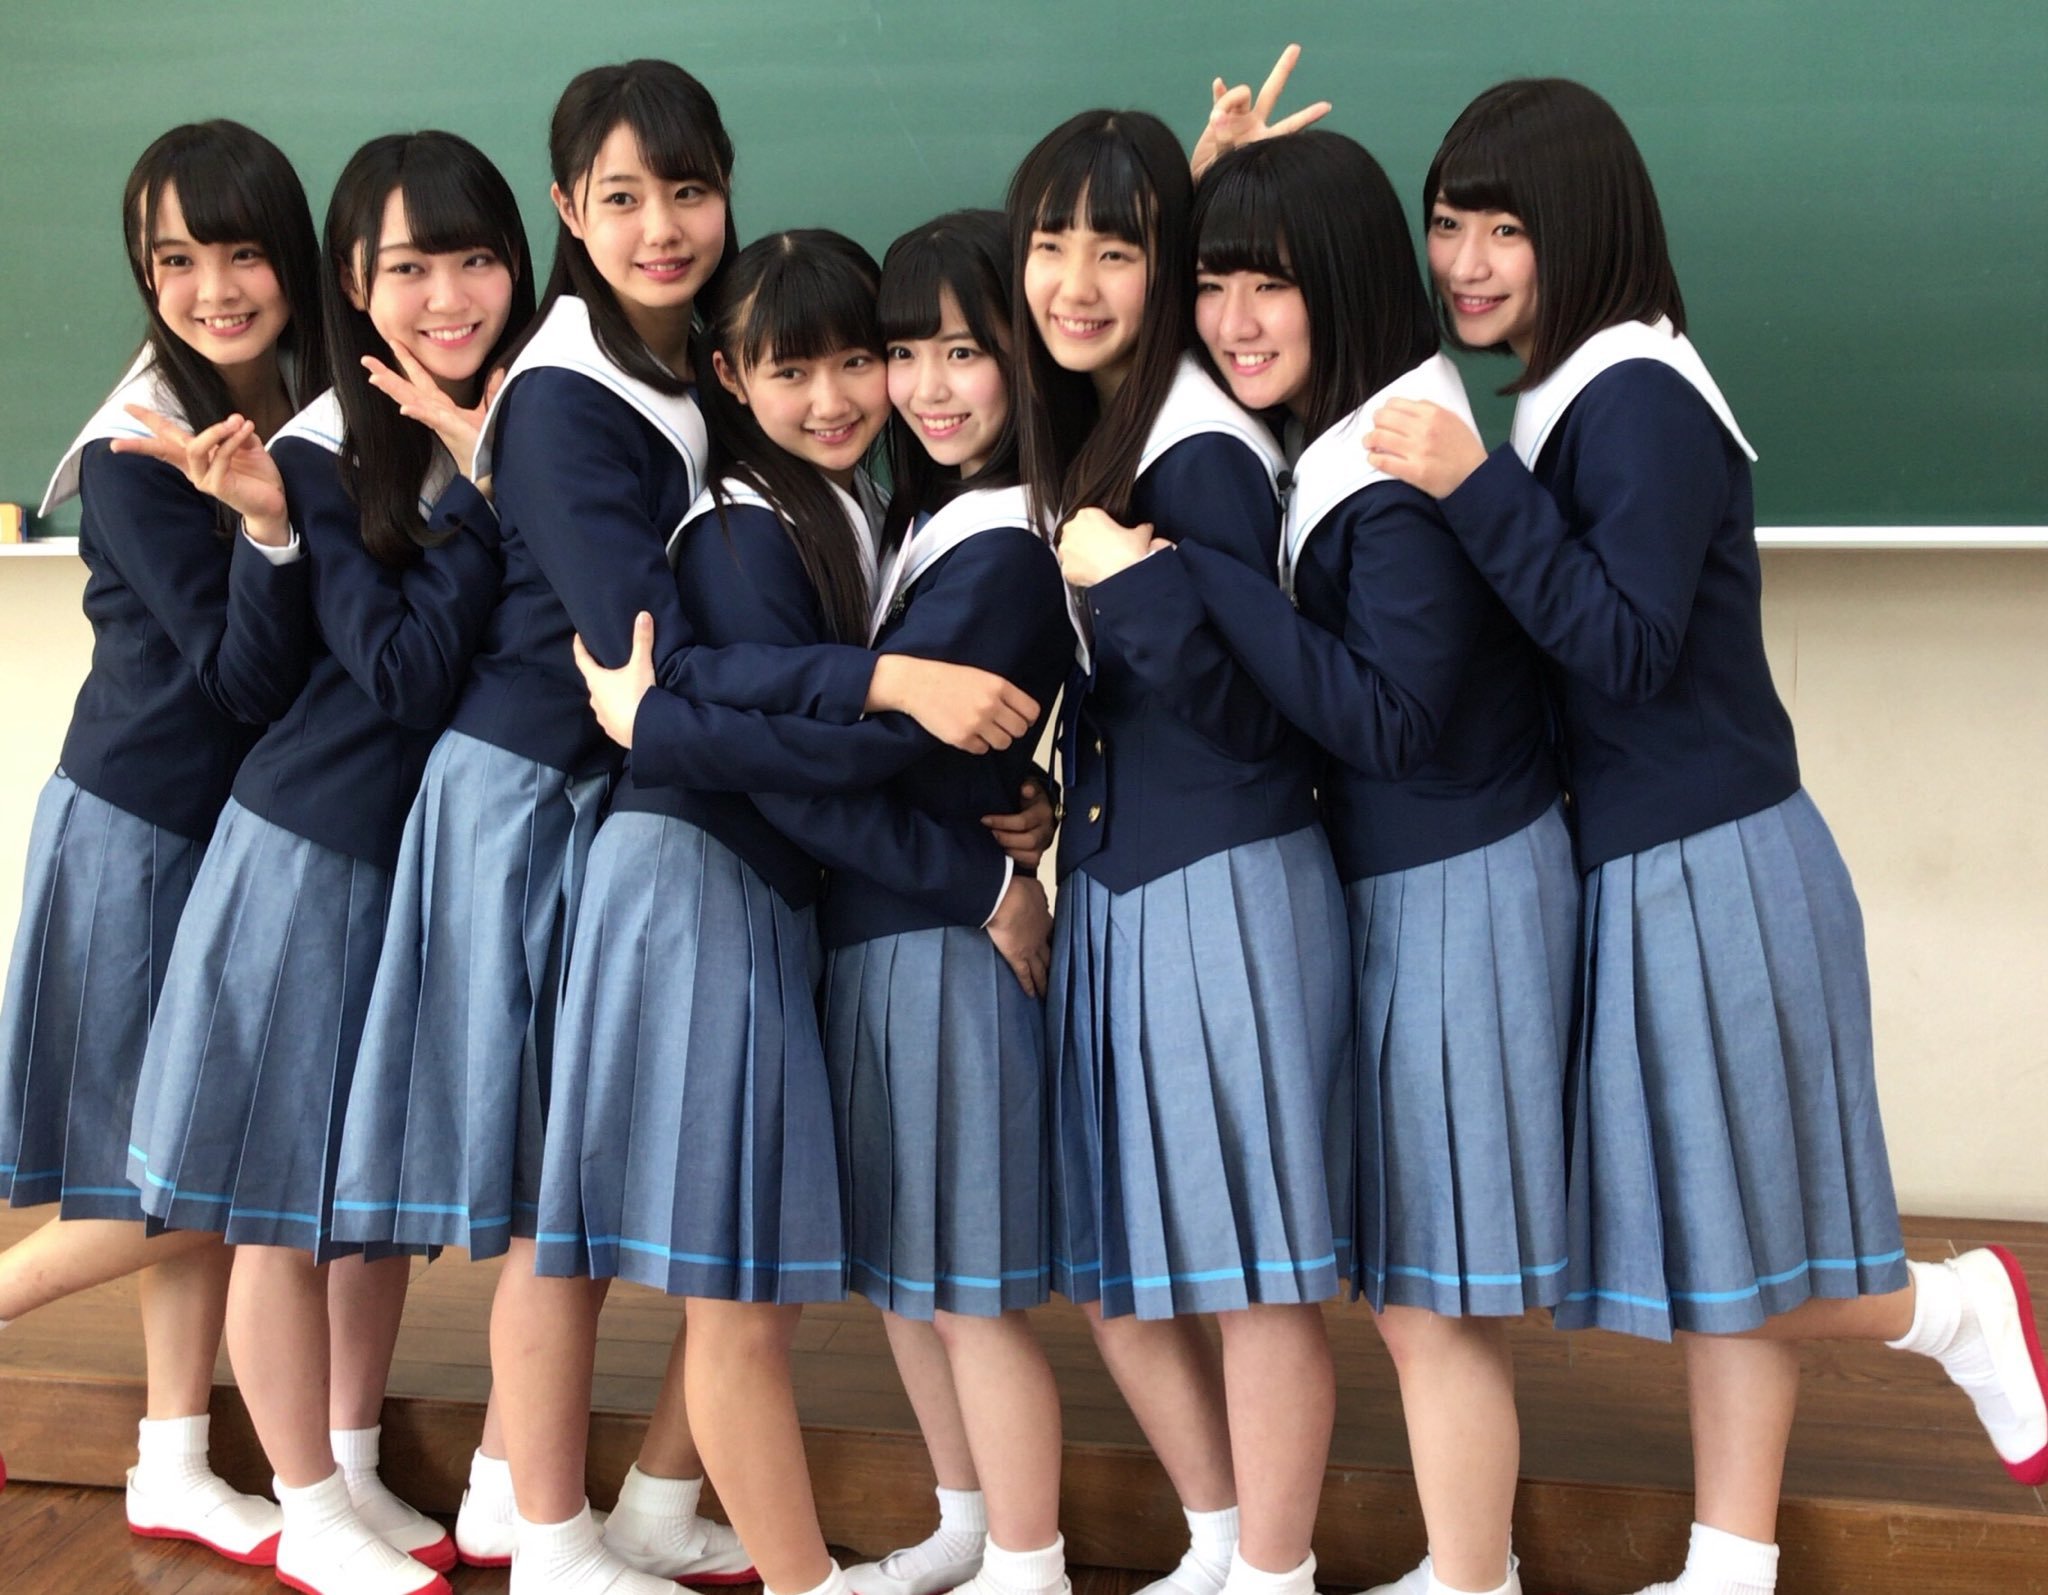 Japanese school 18. Группа akb48 School uniform. Группа akb48 School uniforms Japanese. Akb48 в школьной форме. Группа akb48.